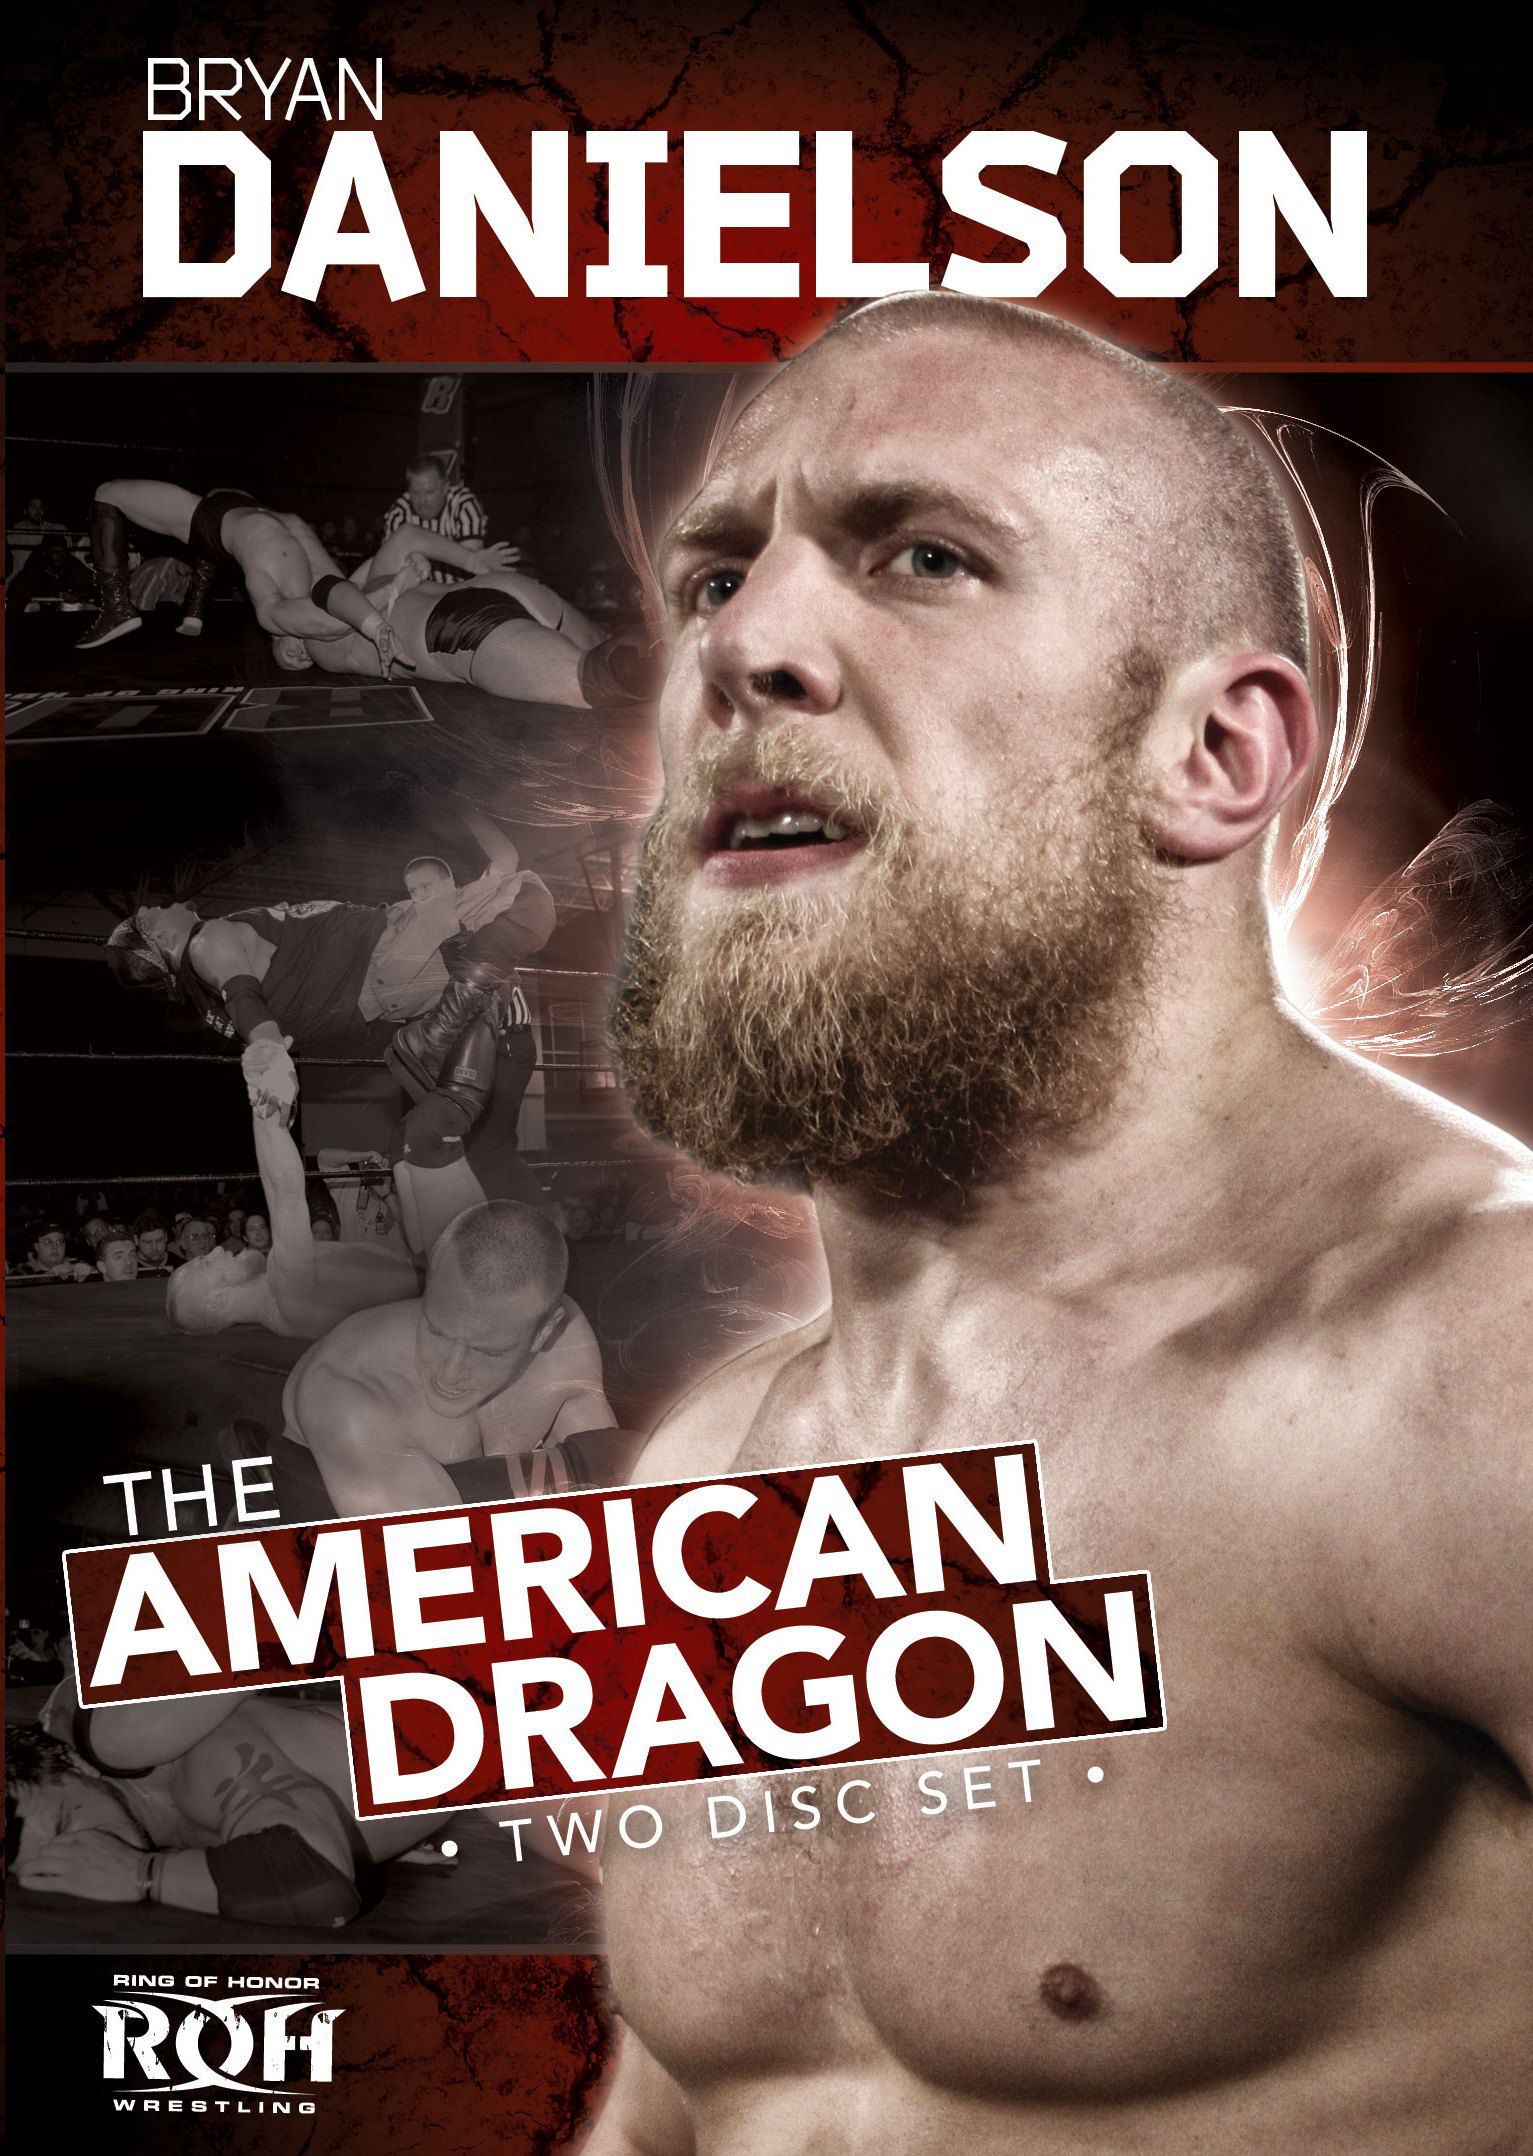 إعتزال دانيال برايان “Bryan Danielson” بطل المصارعة الحرة نهائياً